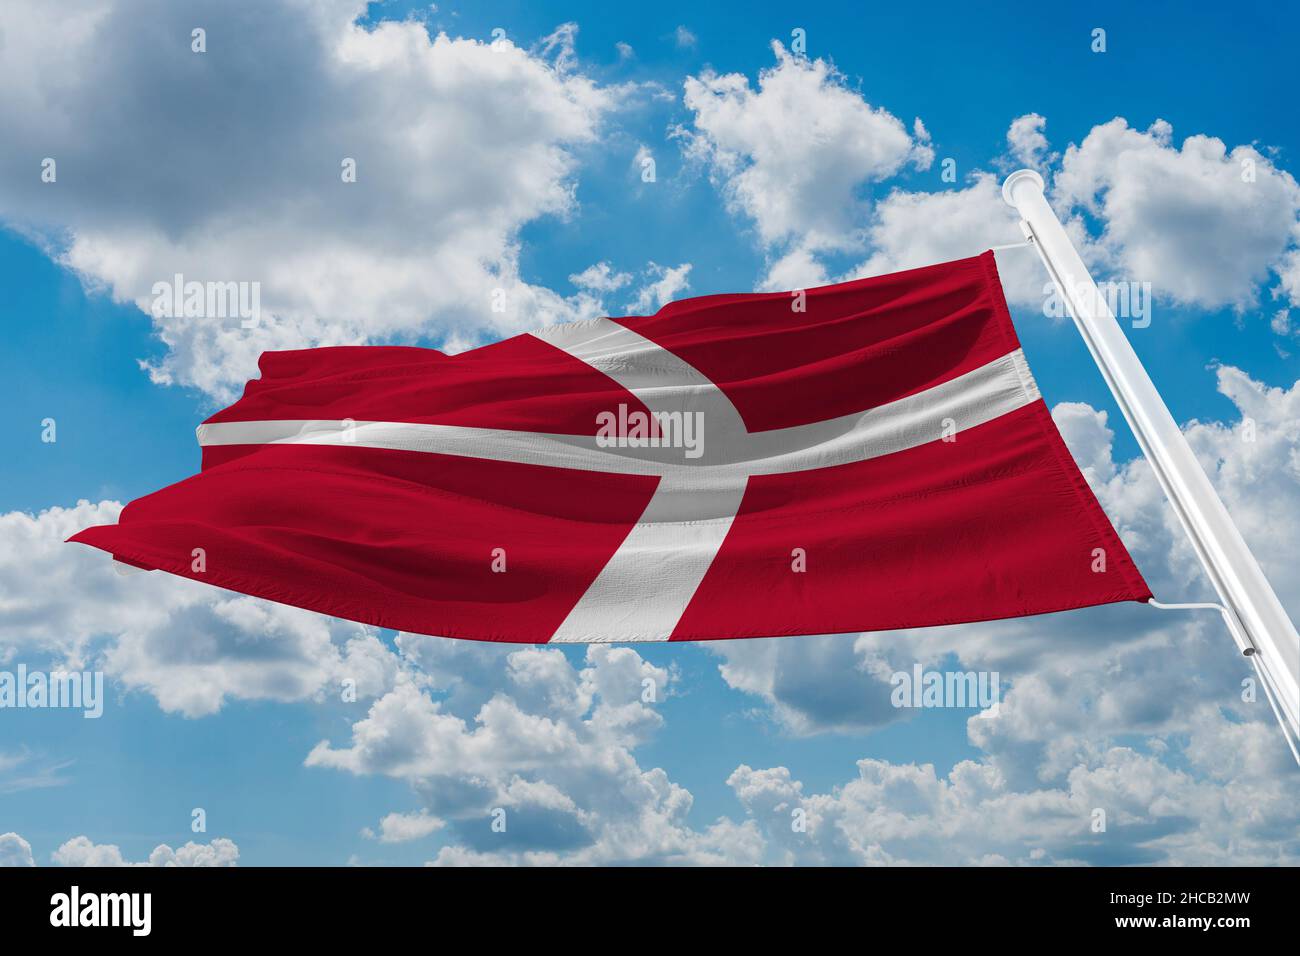 Drapeau du Danemark le drapeau du Danemark est rouge avec une croix scandinave blanche qui s'étend jusqu'aux bords du drapeau; Banque D'Images